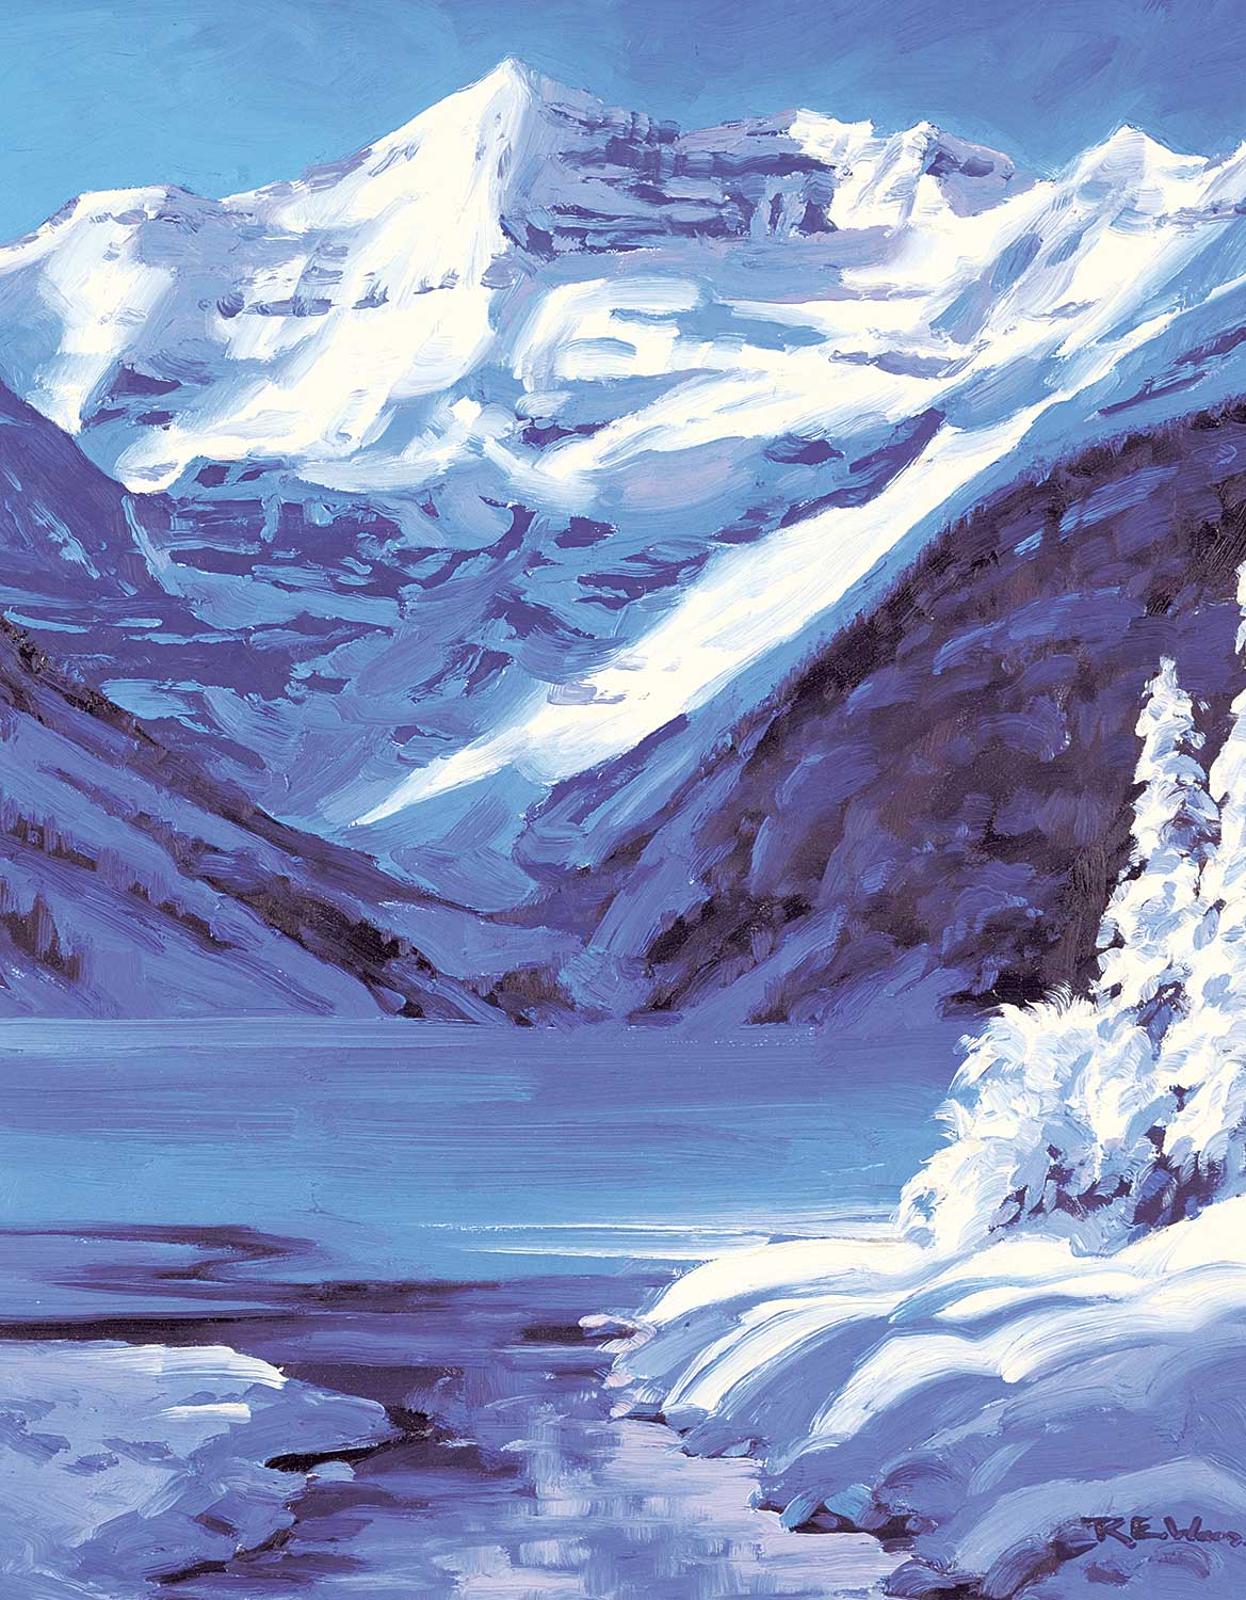 Robert Edward Wood (1919-1980) - Lake Louise Majesty